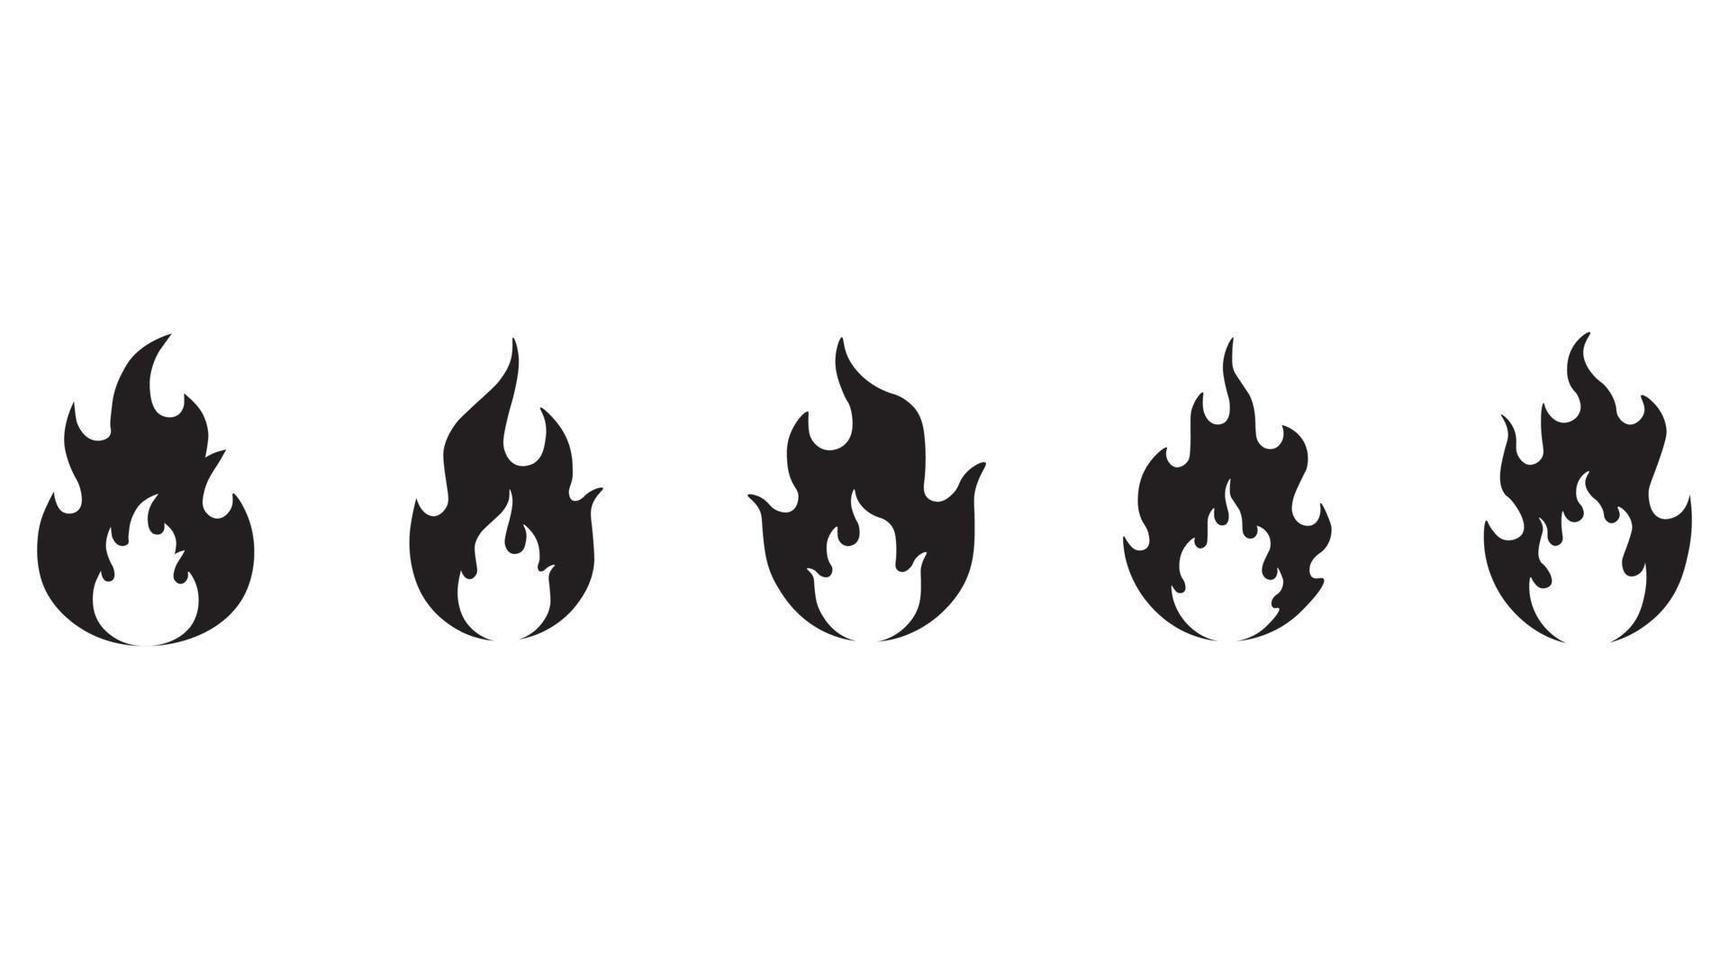 símbolo de llamas de fuego negro. establecer iconos planos fuego aislado sobre fondo blanco. vector de conjunto de iconos de fuego. conjunto de iconos de llamas.